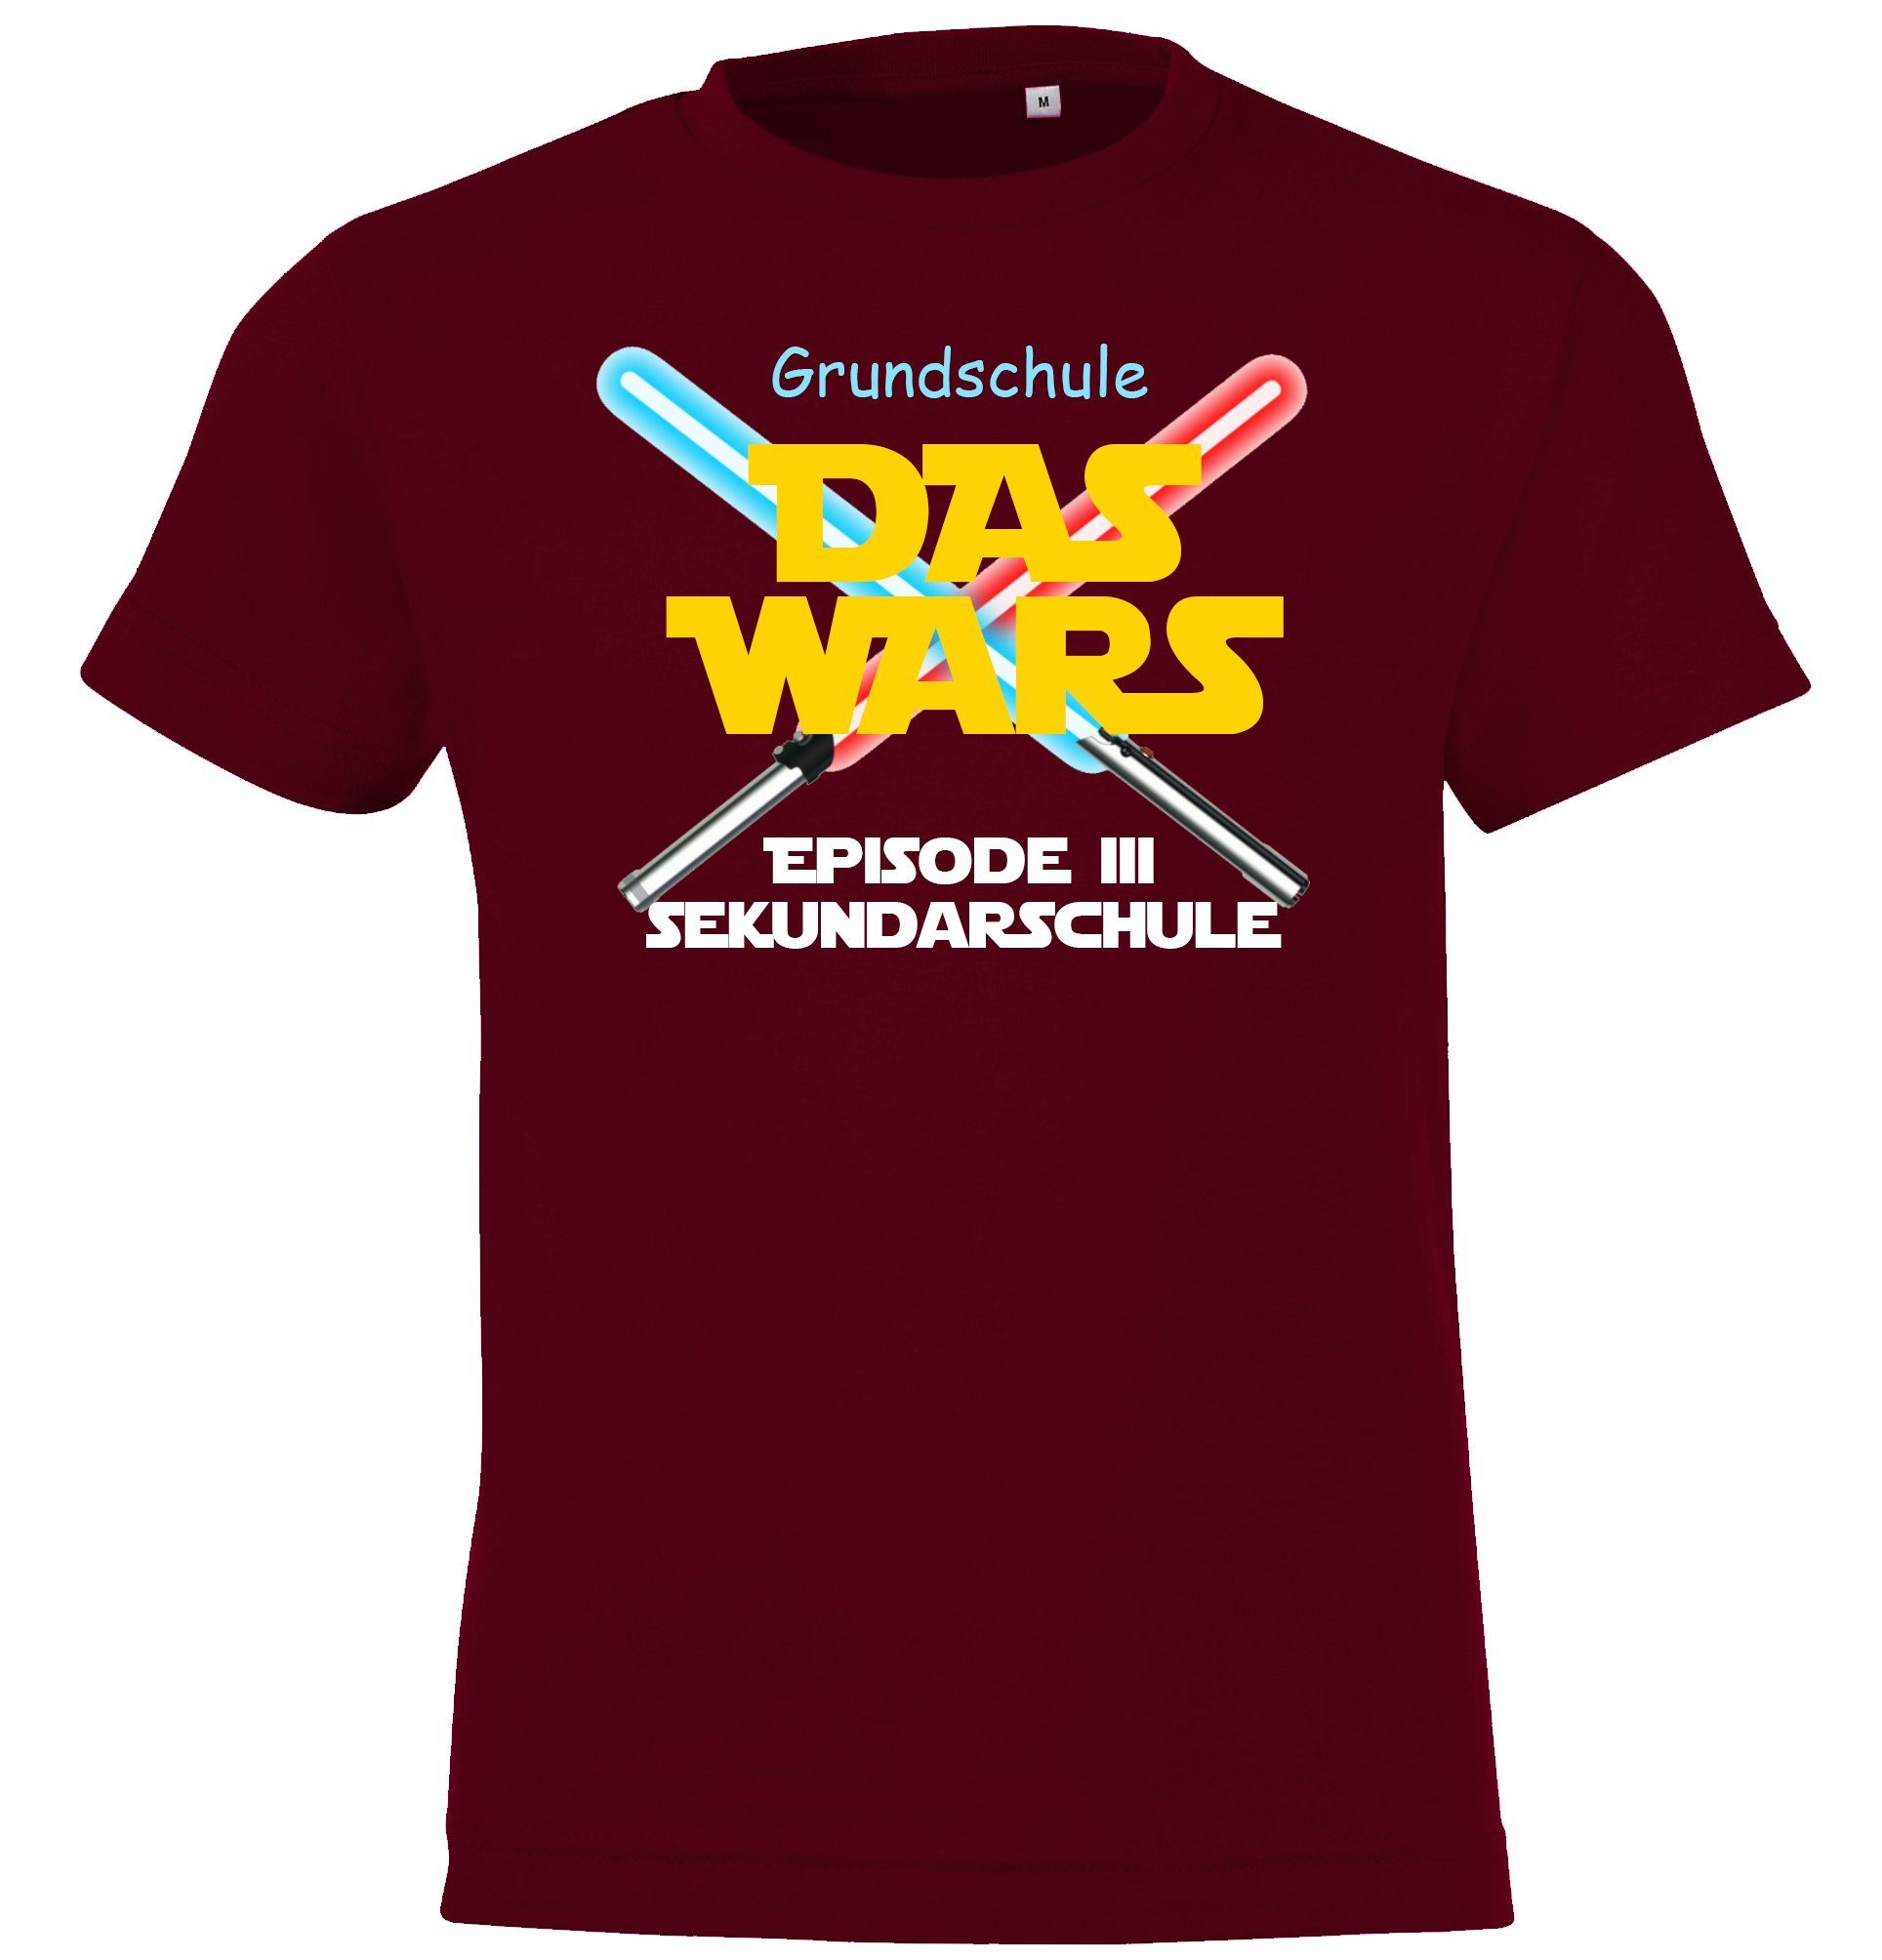 T-Shirt Schulzeit Wars Das lustigem Youth mit Designz Kinder der Motiv Grundschule Burgund Shirt